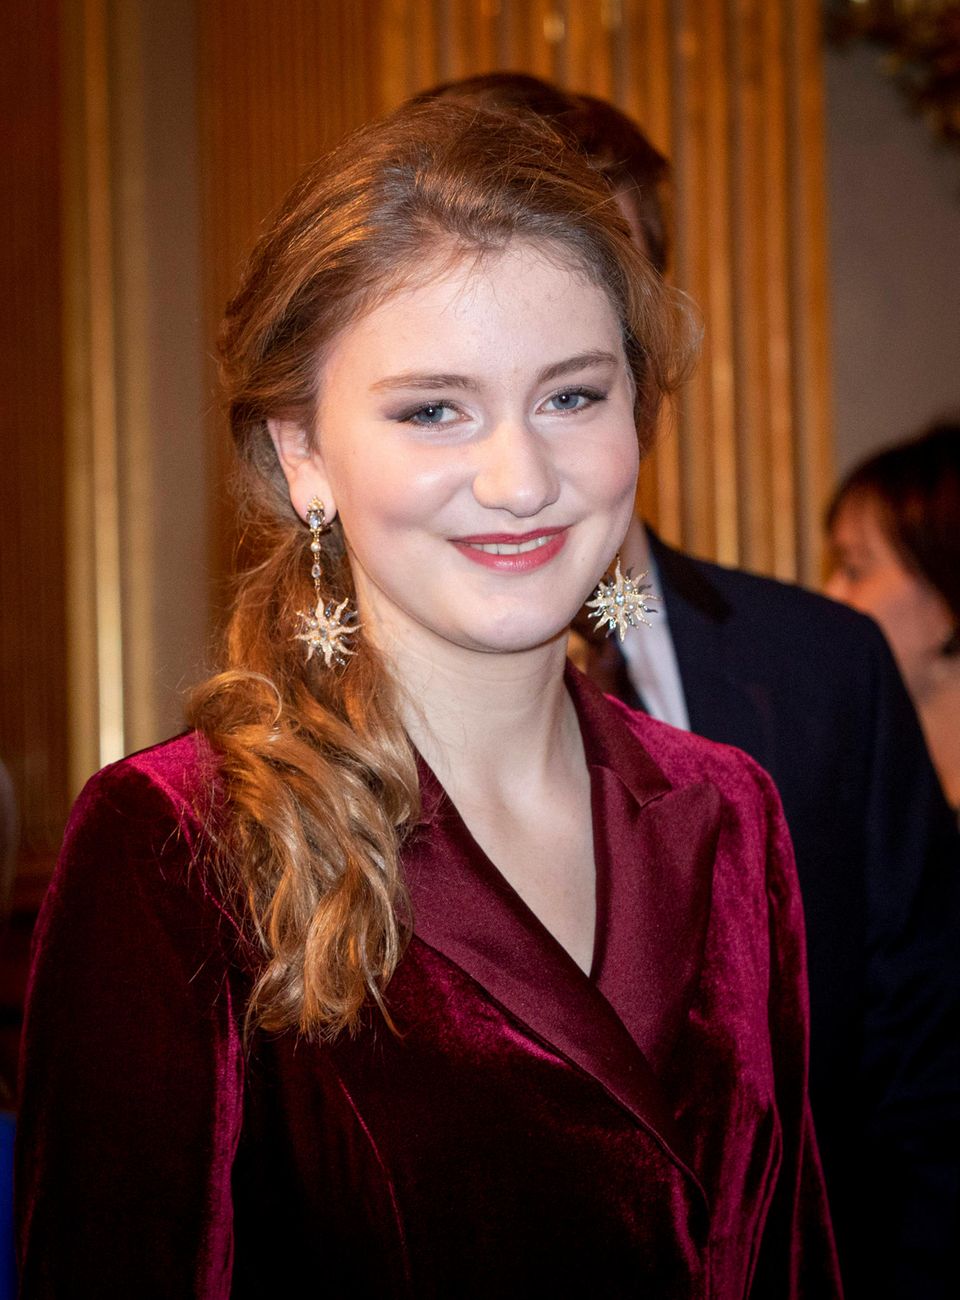 Prinzessin Elisabeth beim jährlichen Weihnachtskonzert 2019 in Brüssel